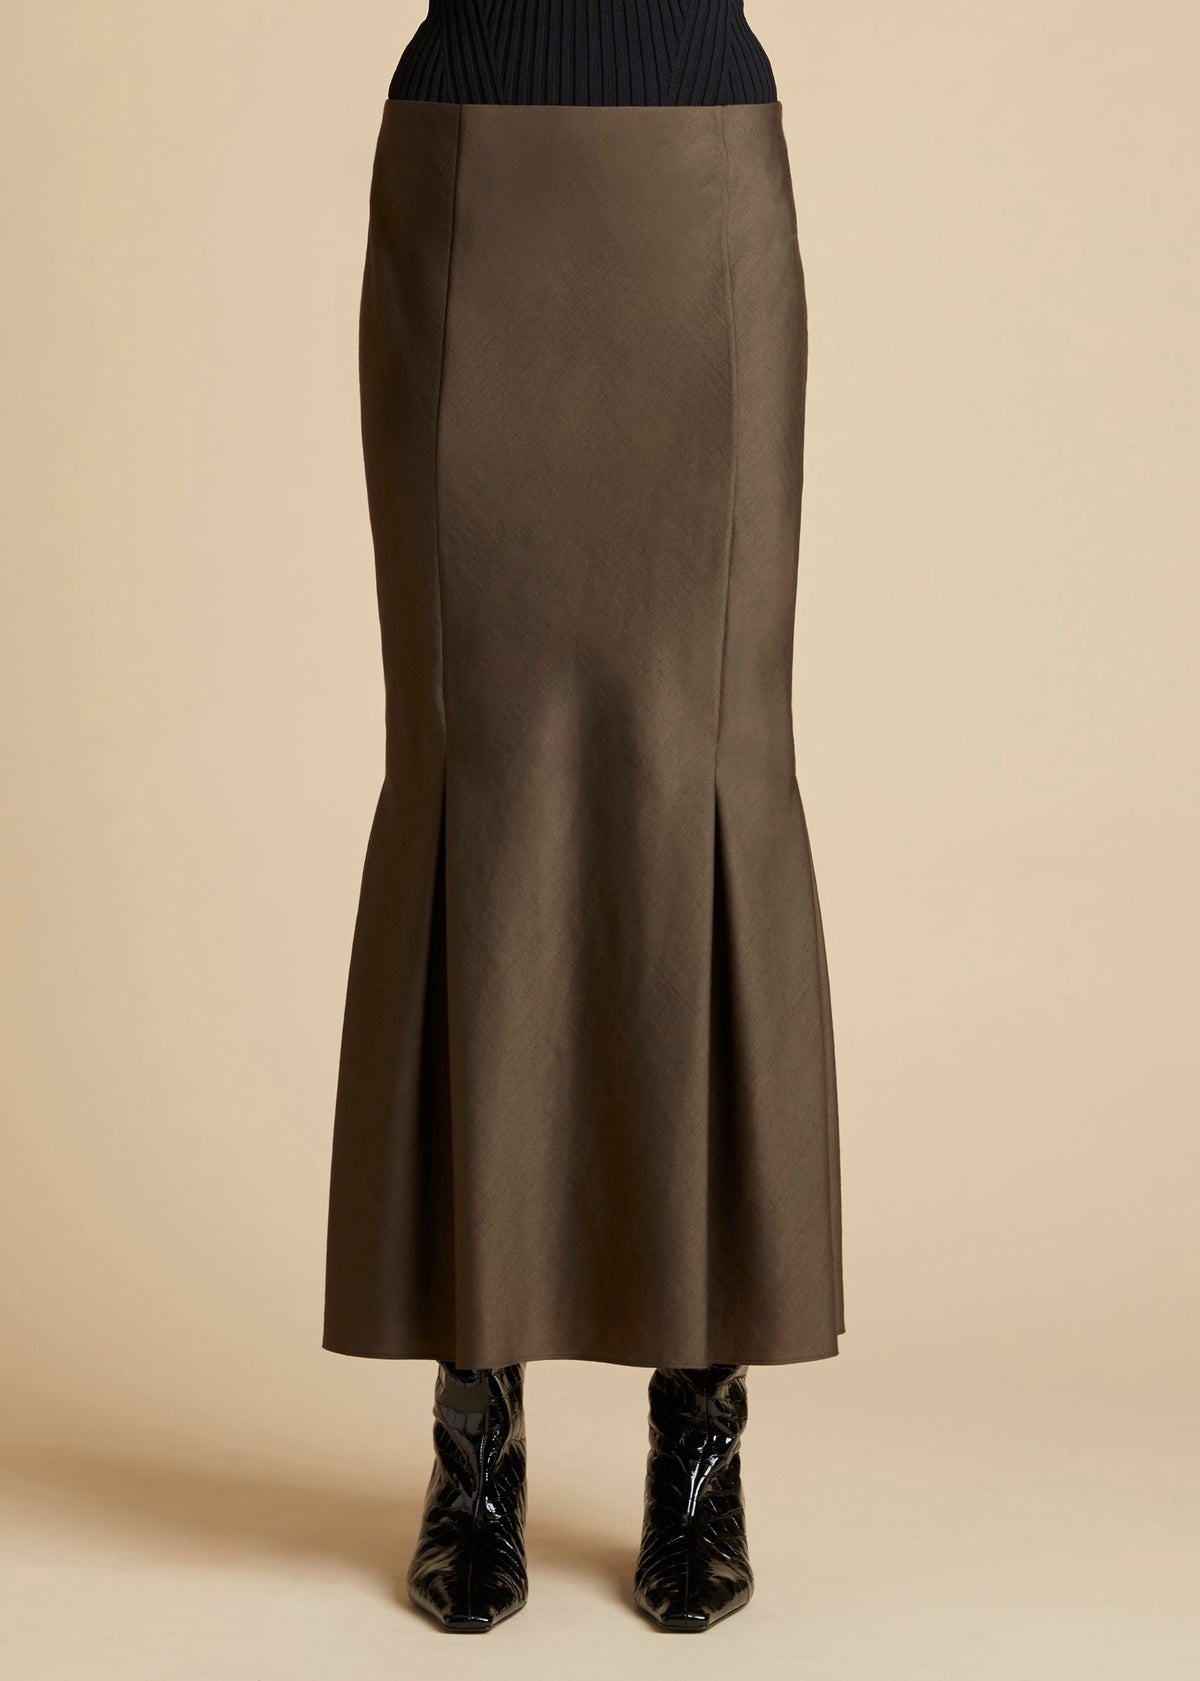 KHAITE The Levine Skirt in Brown | REVERSIBLE